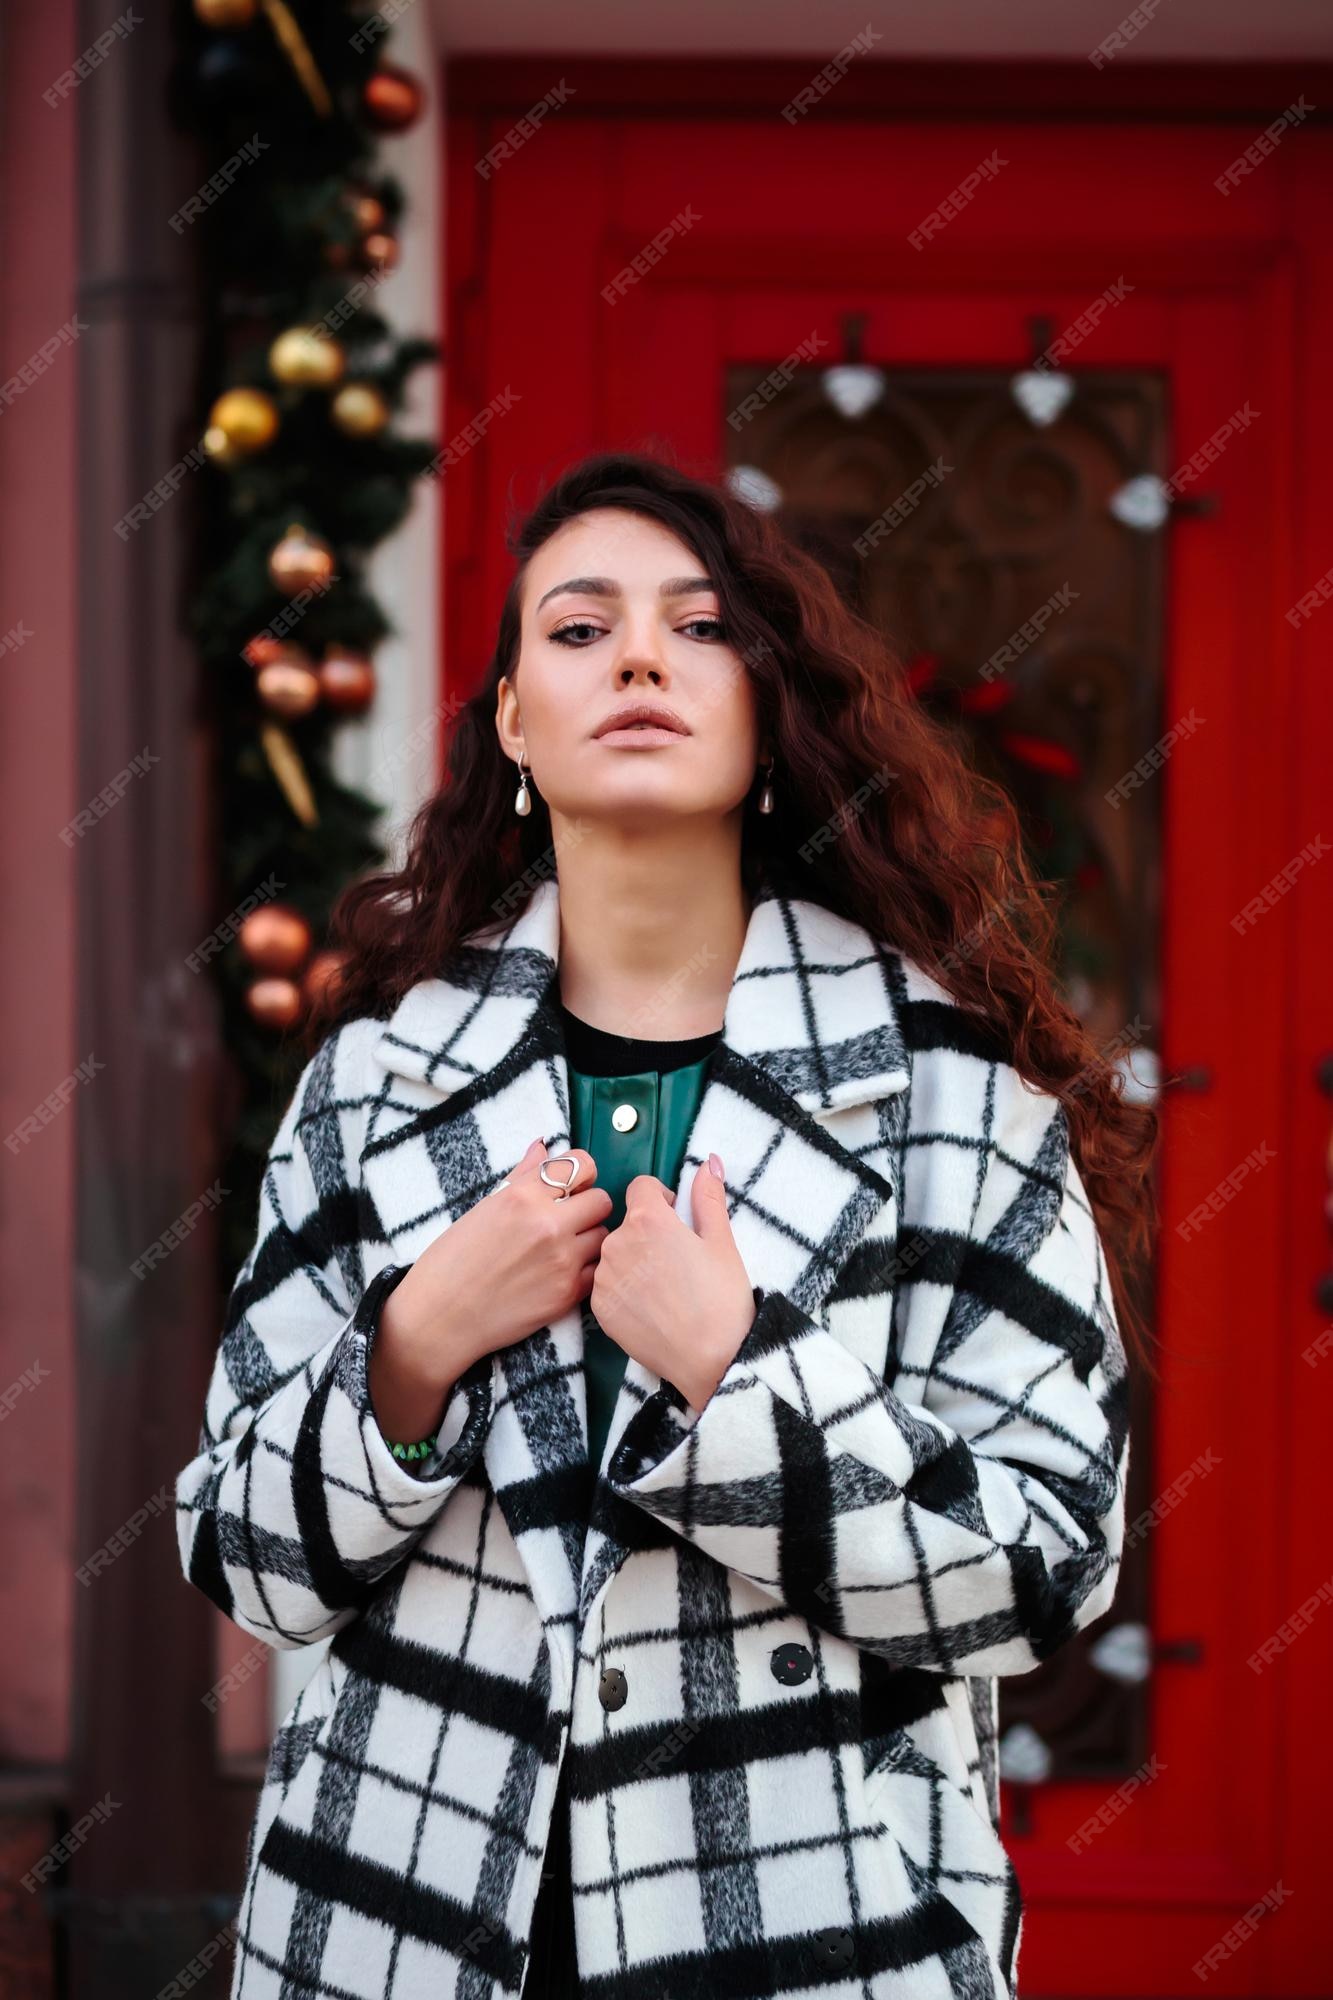 Mujer glamorosa en abrigo a cuadros blanco y negro frente a la puerta roja con adornos navideños, concepto de moda callejera de invierno. Foto Premium